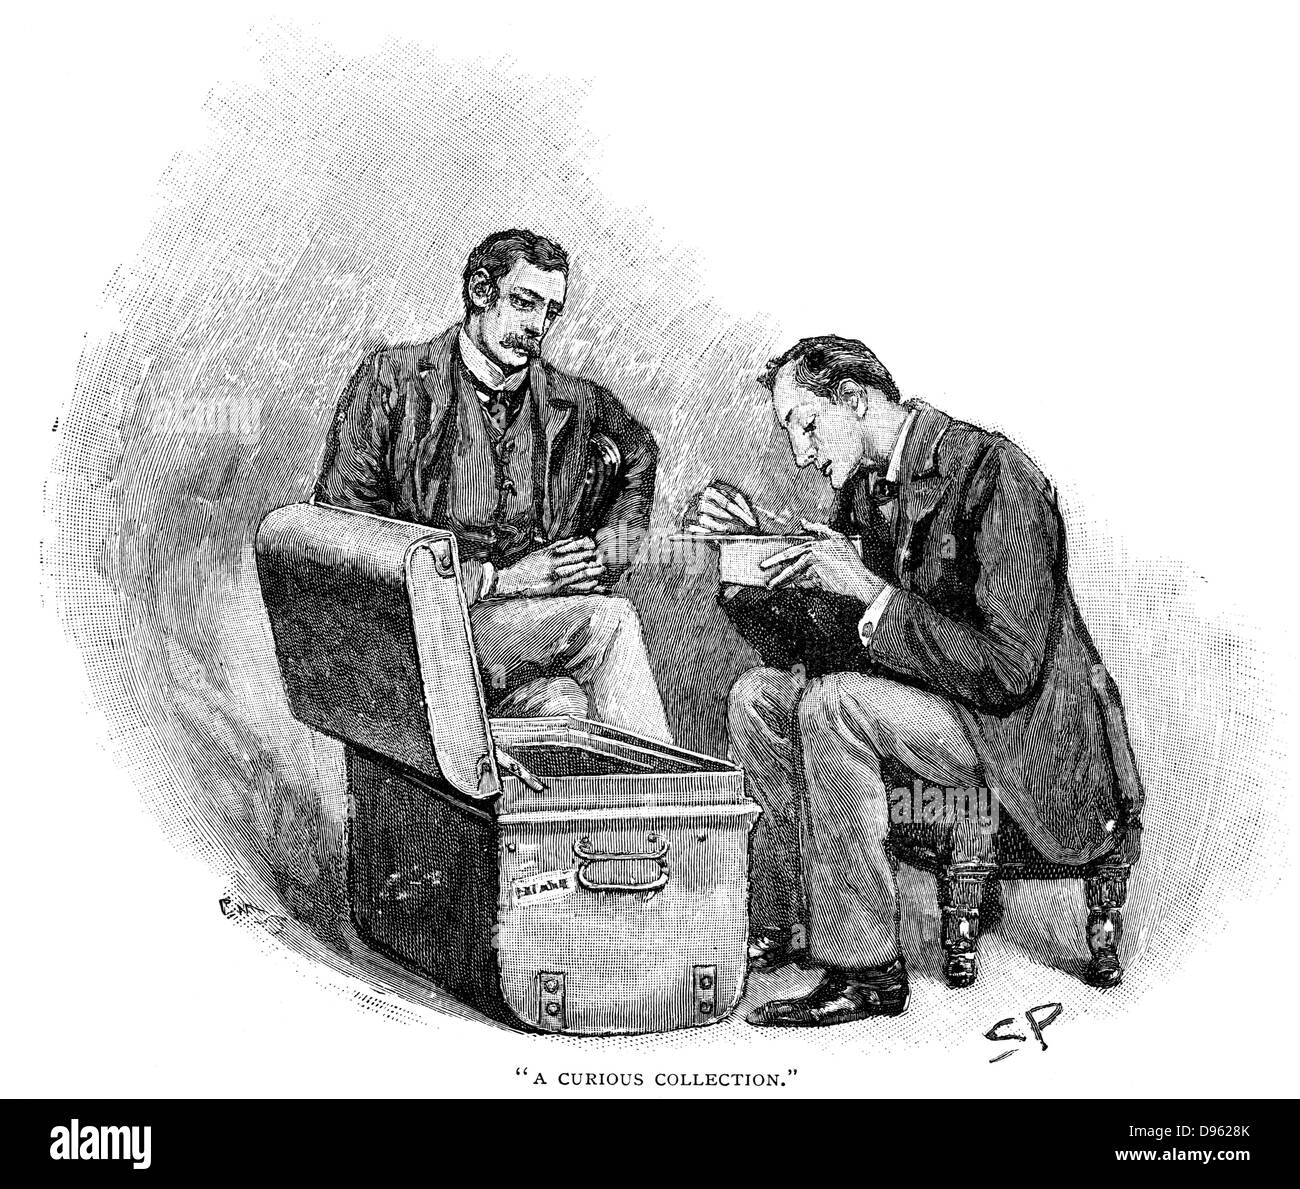 L'avventura del Musgrave rituale": Dr Watson guardando Sherlock Holmes andare attraverso il mememtoes dei suoi vecchi casi. Illustrazione di Sidney Paget E., il primo artista a creare un'immagine di Sherlock Holmes, per la storia pubblicata in "The Strand Magazine', Londra, 1893. Foto Stock